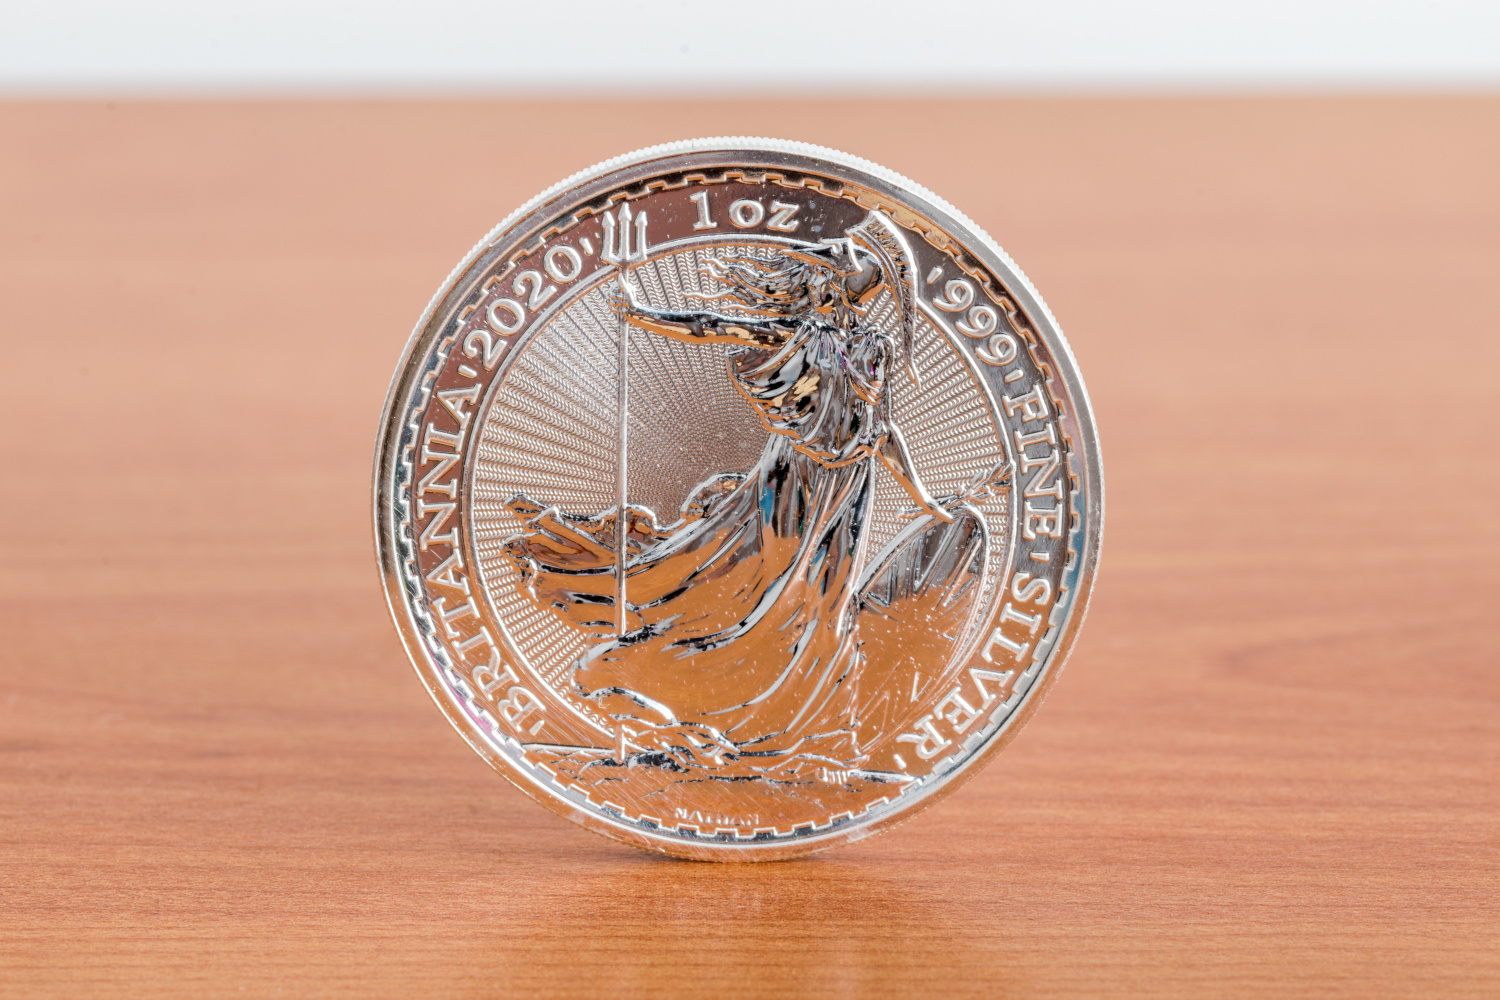 A silver Britannia coin on a wooden table.